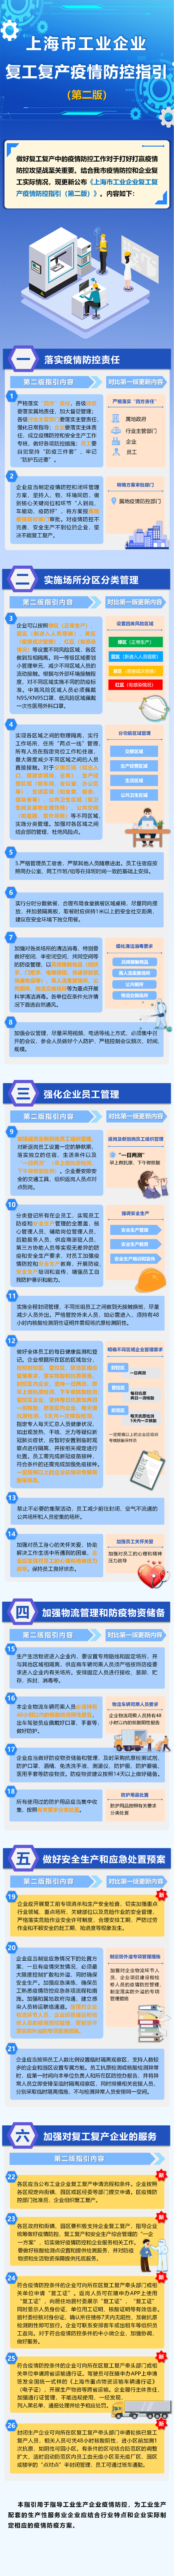 上海市工业企业复工复产疫情防控指引(第二版)发布 (http://www.hsqixing.com/) 国内 第1张